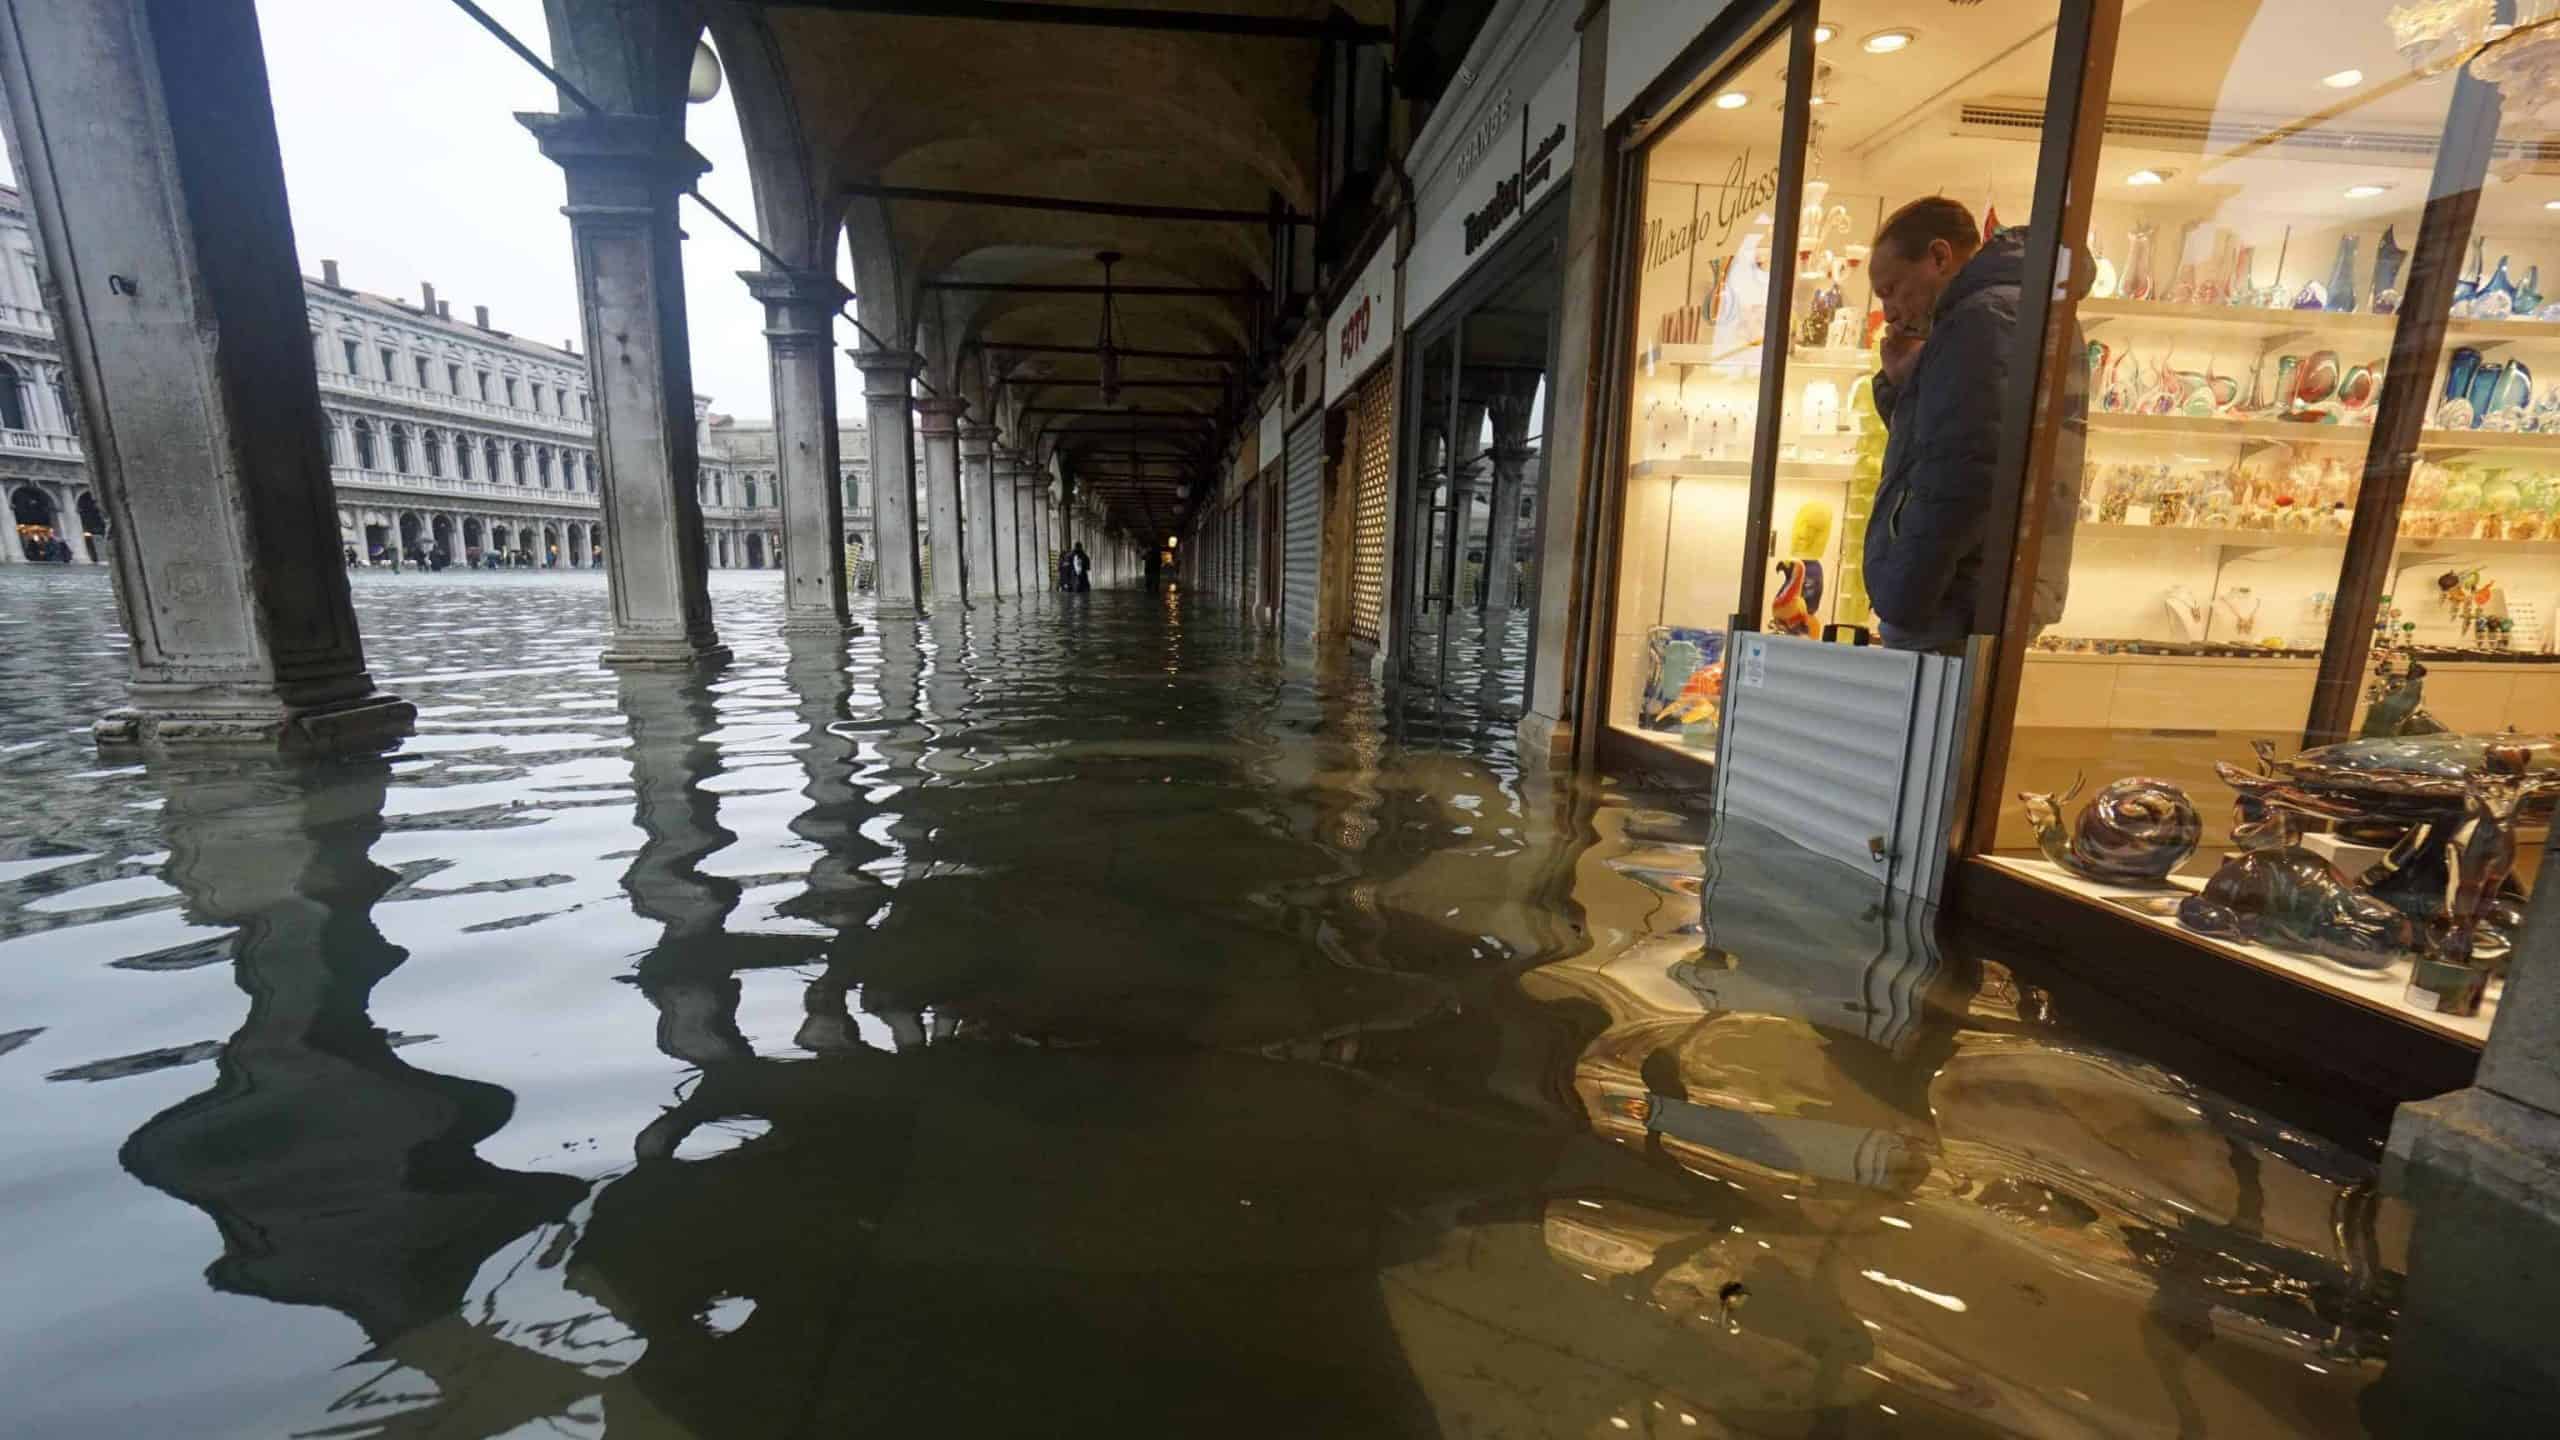 Площадь затопления. Площадь Сан Марко в Венеции затопило. Венеция Сан Марко наводнение 2019. Потоп в Венеции 2019. Венеция затонет.